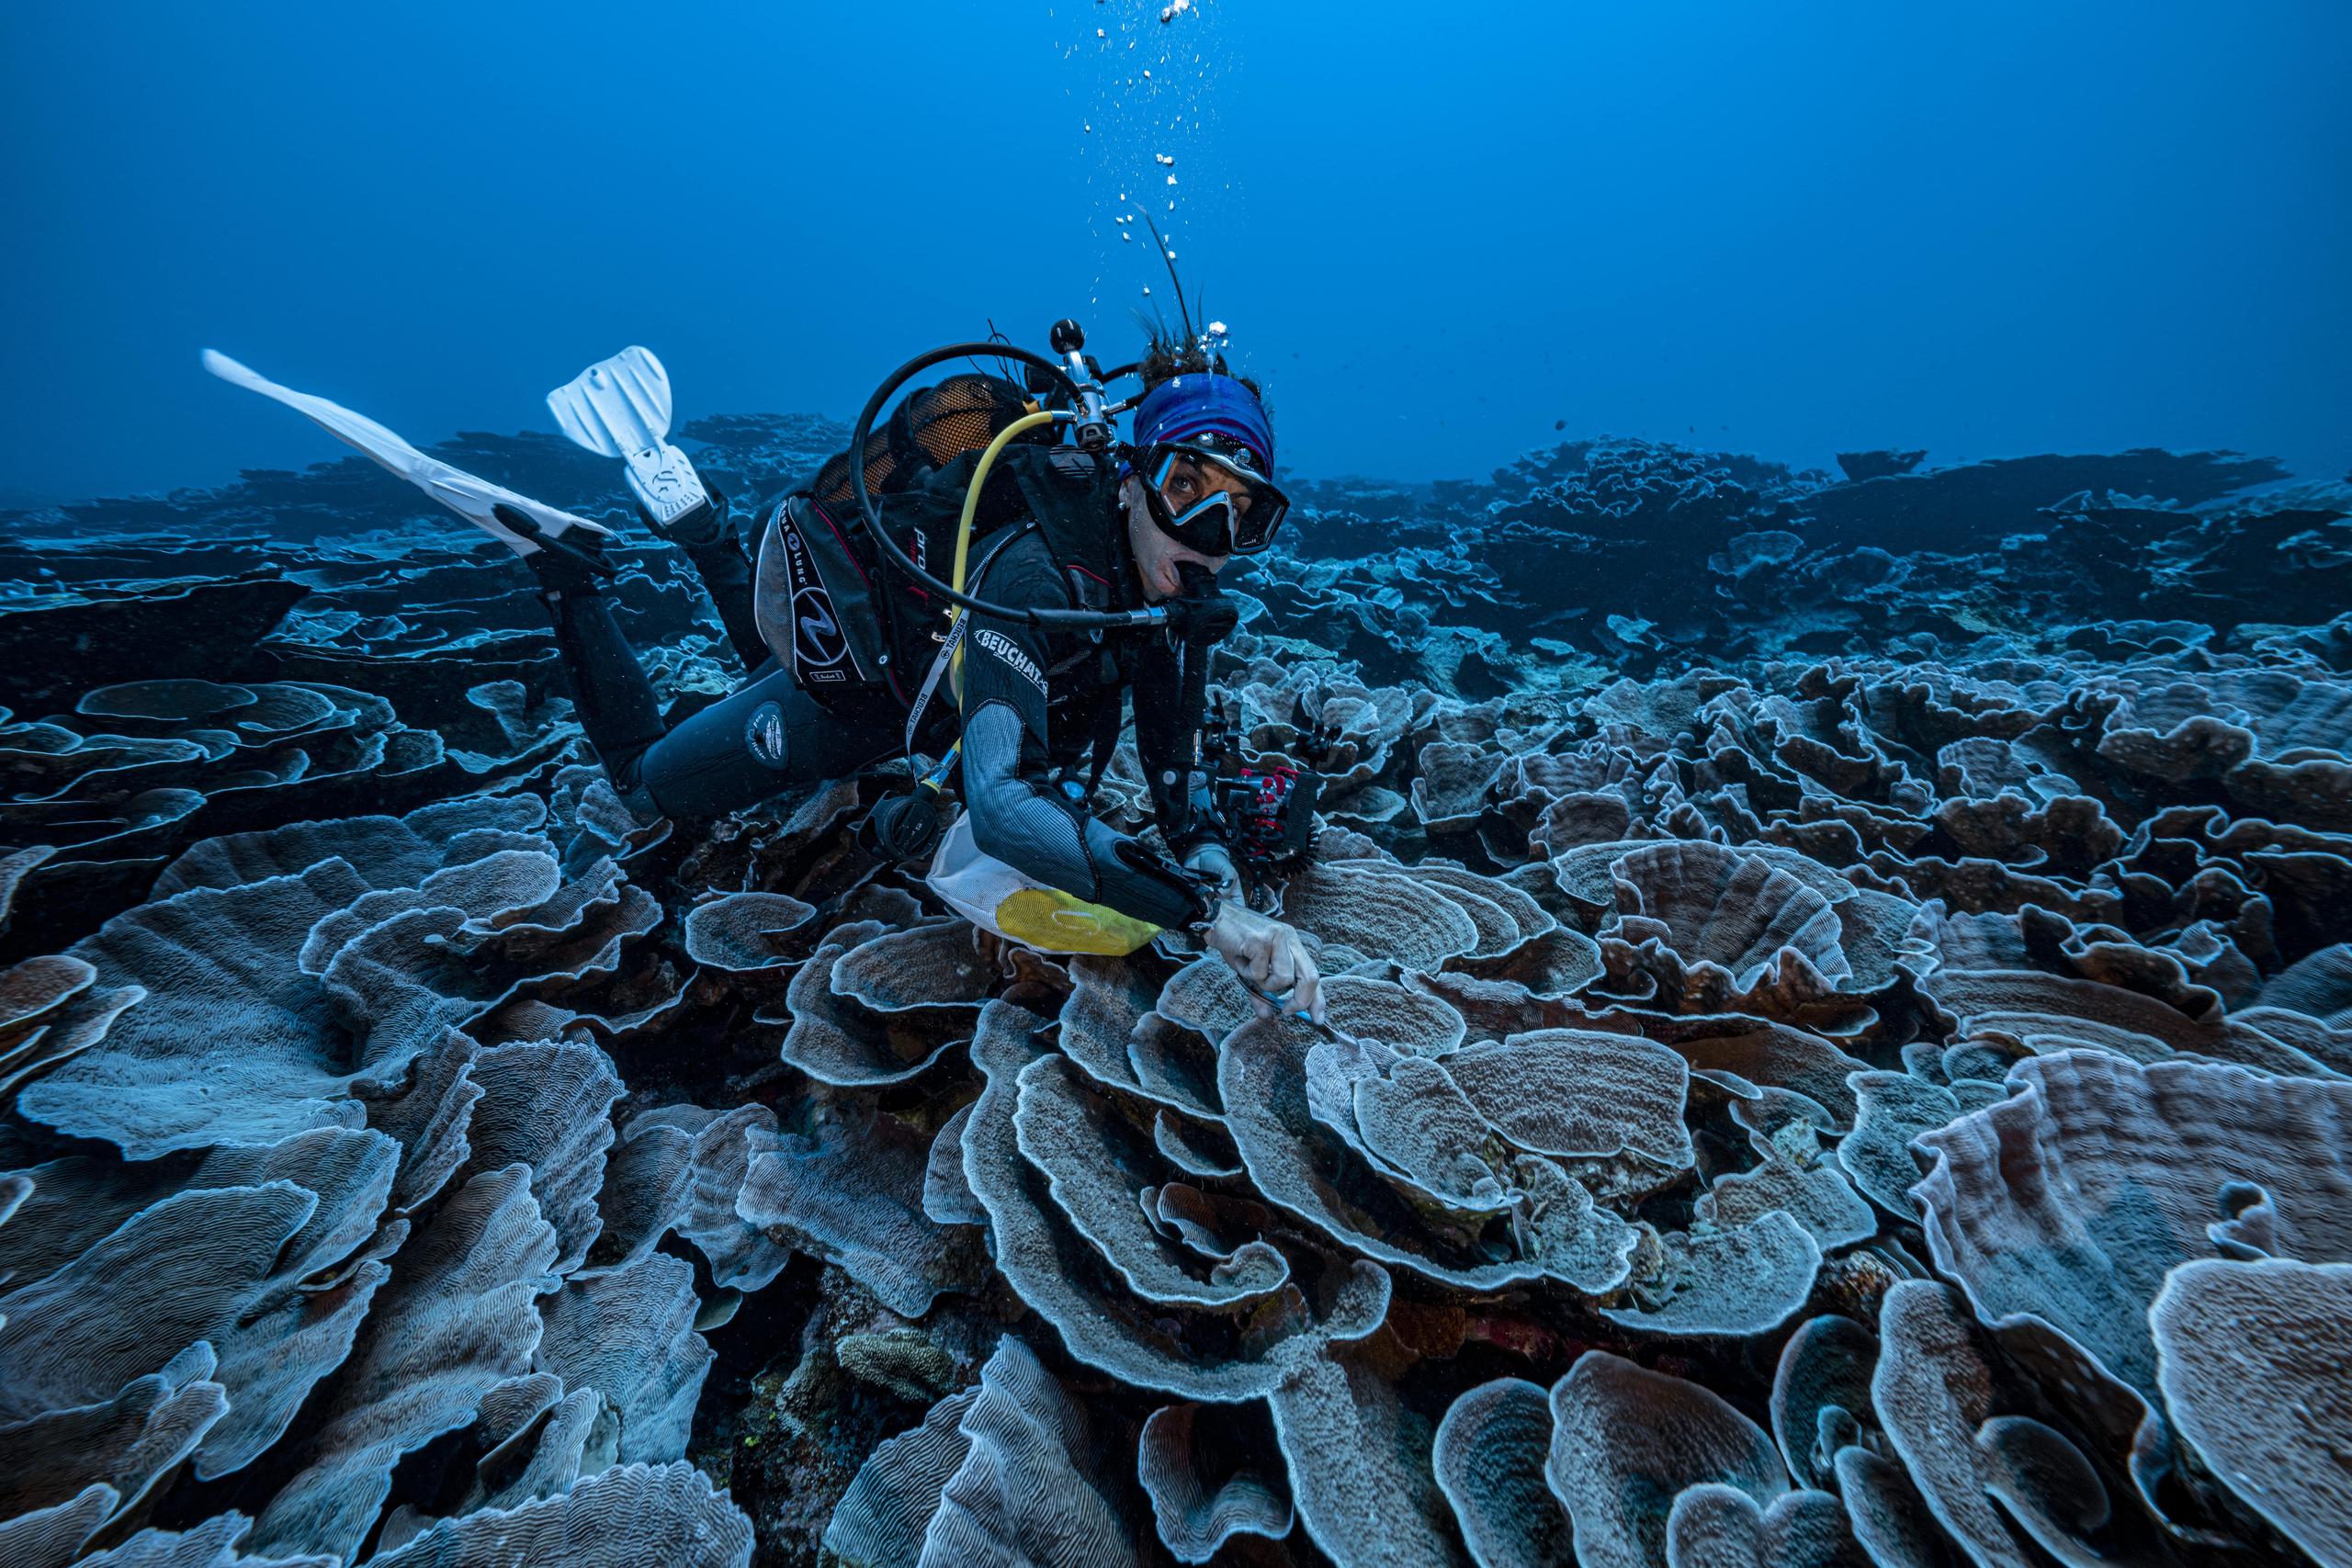 El proyecto, dirigido por el fotógrafo explorador Alexis Rosenfeld, se enmarca dentro del planteamiento global de la Unesco de cartografiar los océanos.